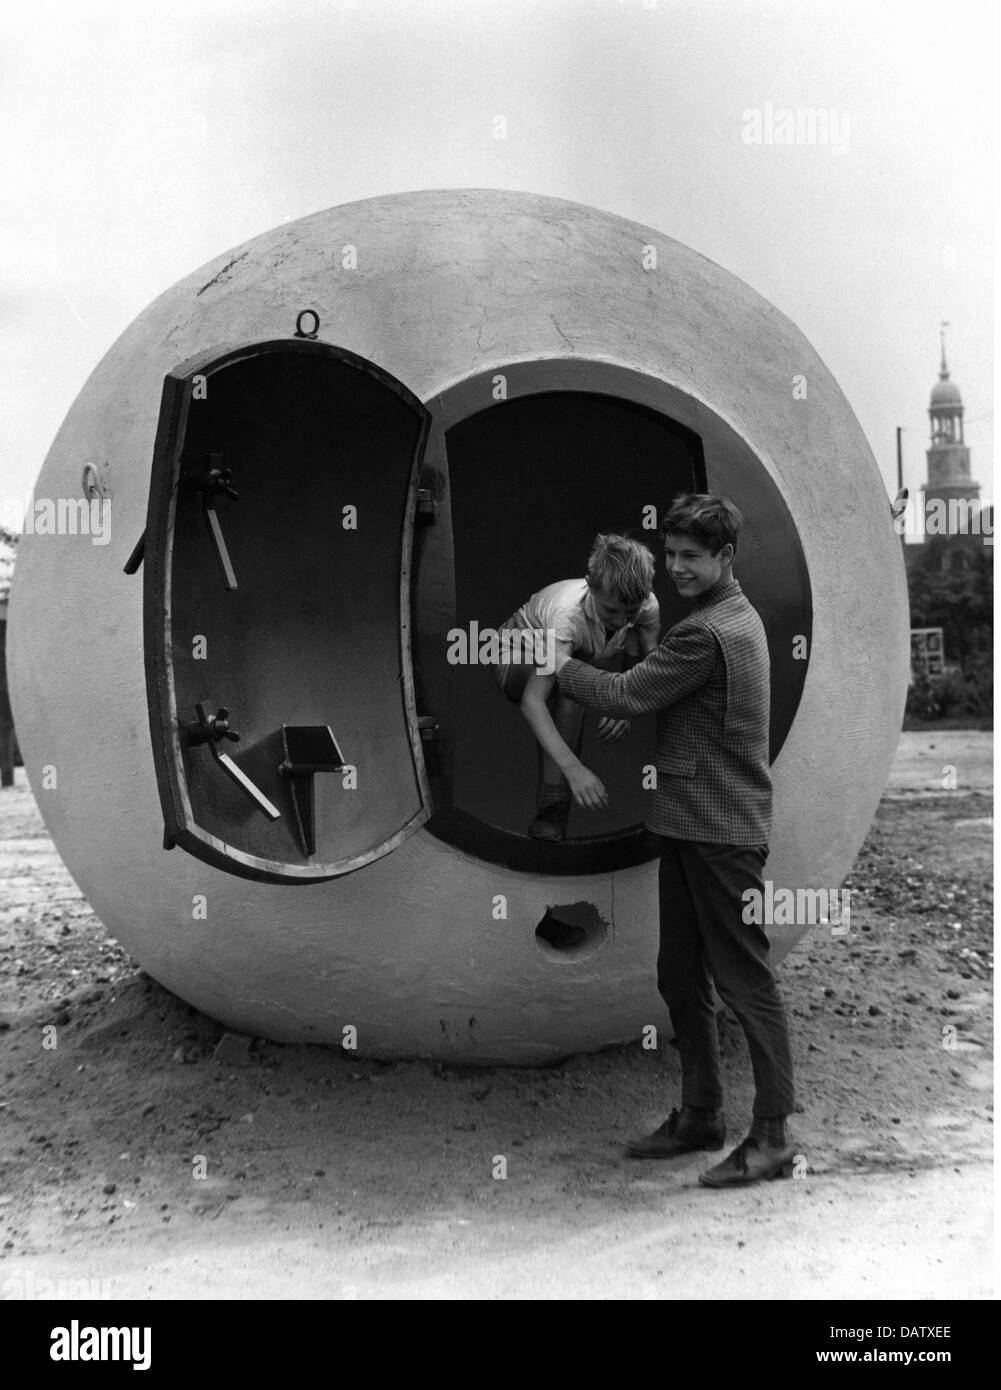 Guerre froide, bunker en béton blindé, appelé « Atom football », Hambourg, Allemagne, années 60, droits supplémentaires-Clearences-non disponible Banque D'Images